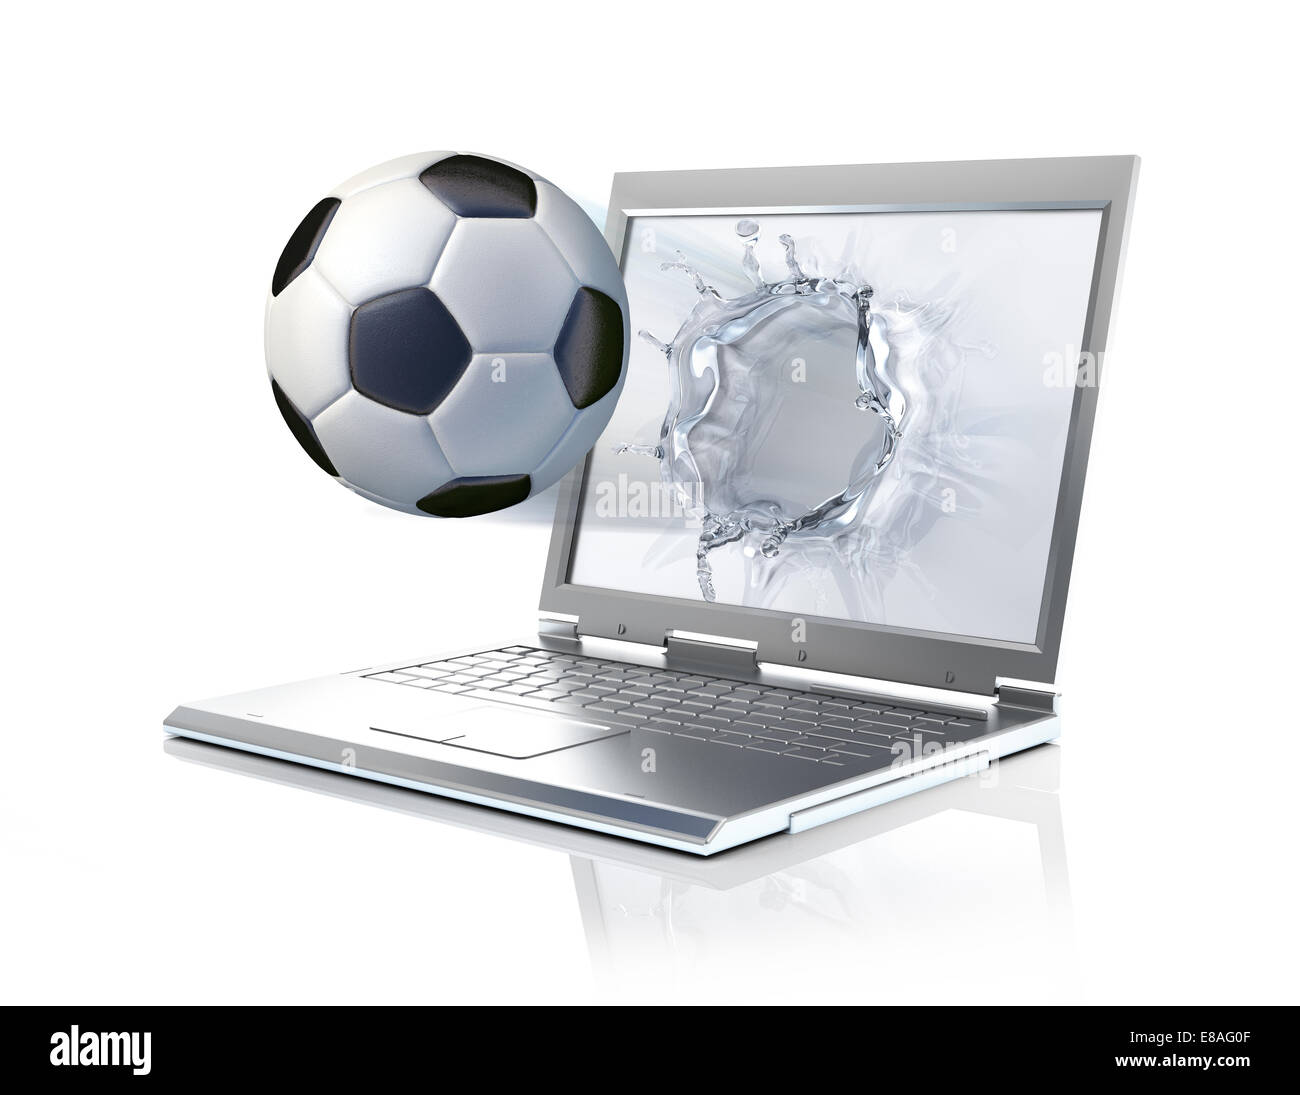 Fußball-Ball, die sich aus einem Laptop-Computer, bilden einen flüssigen Spritzer auf dem Bildschirm. Isoliert auf weißem Hintergrund Stockfoto